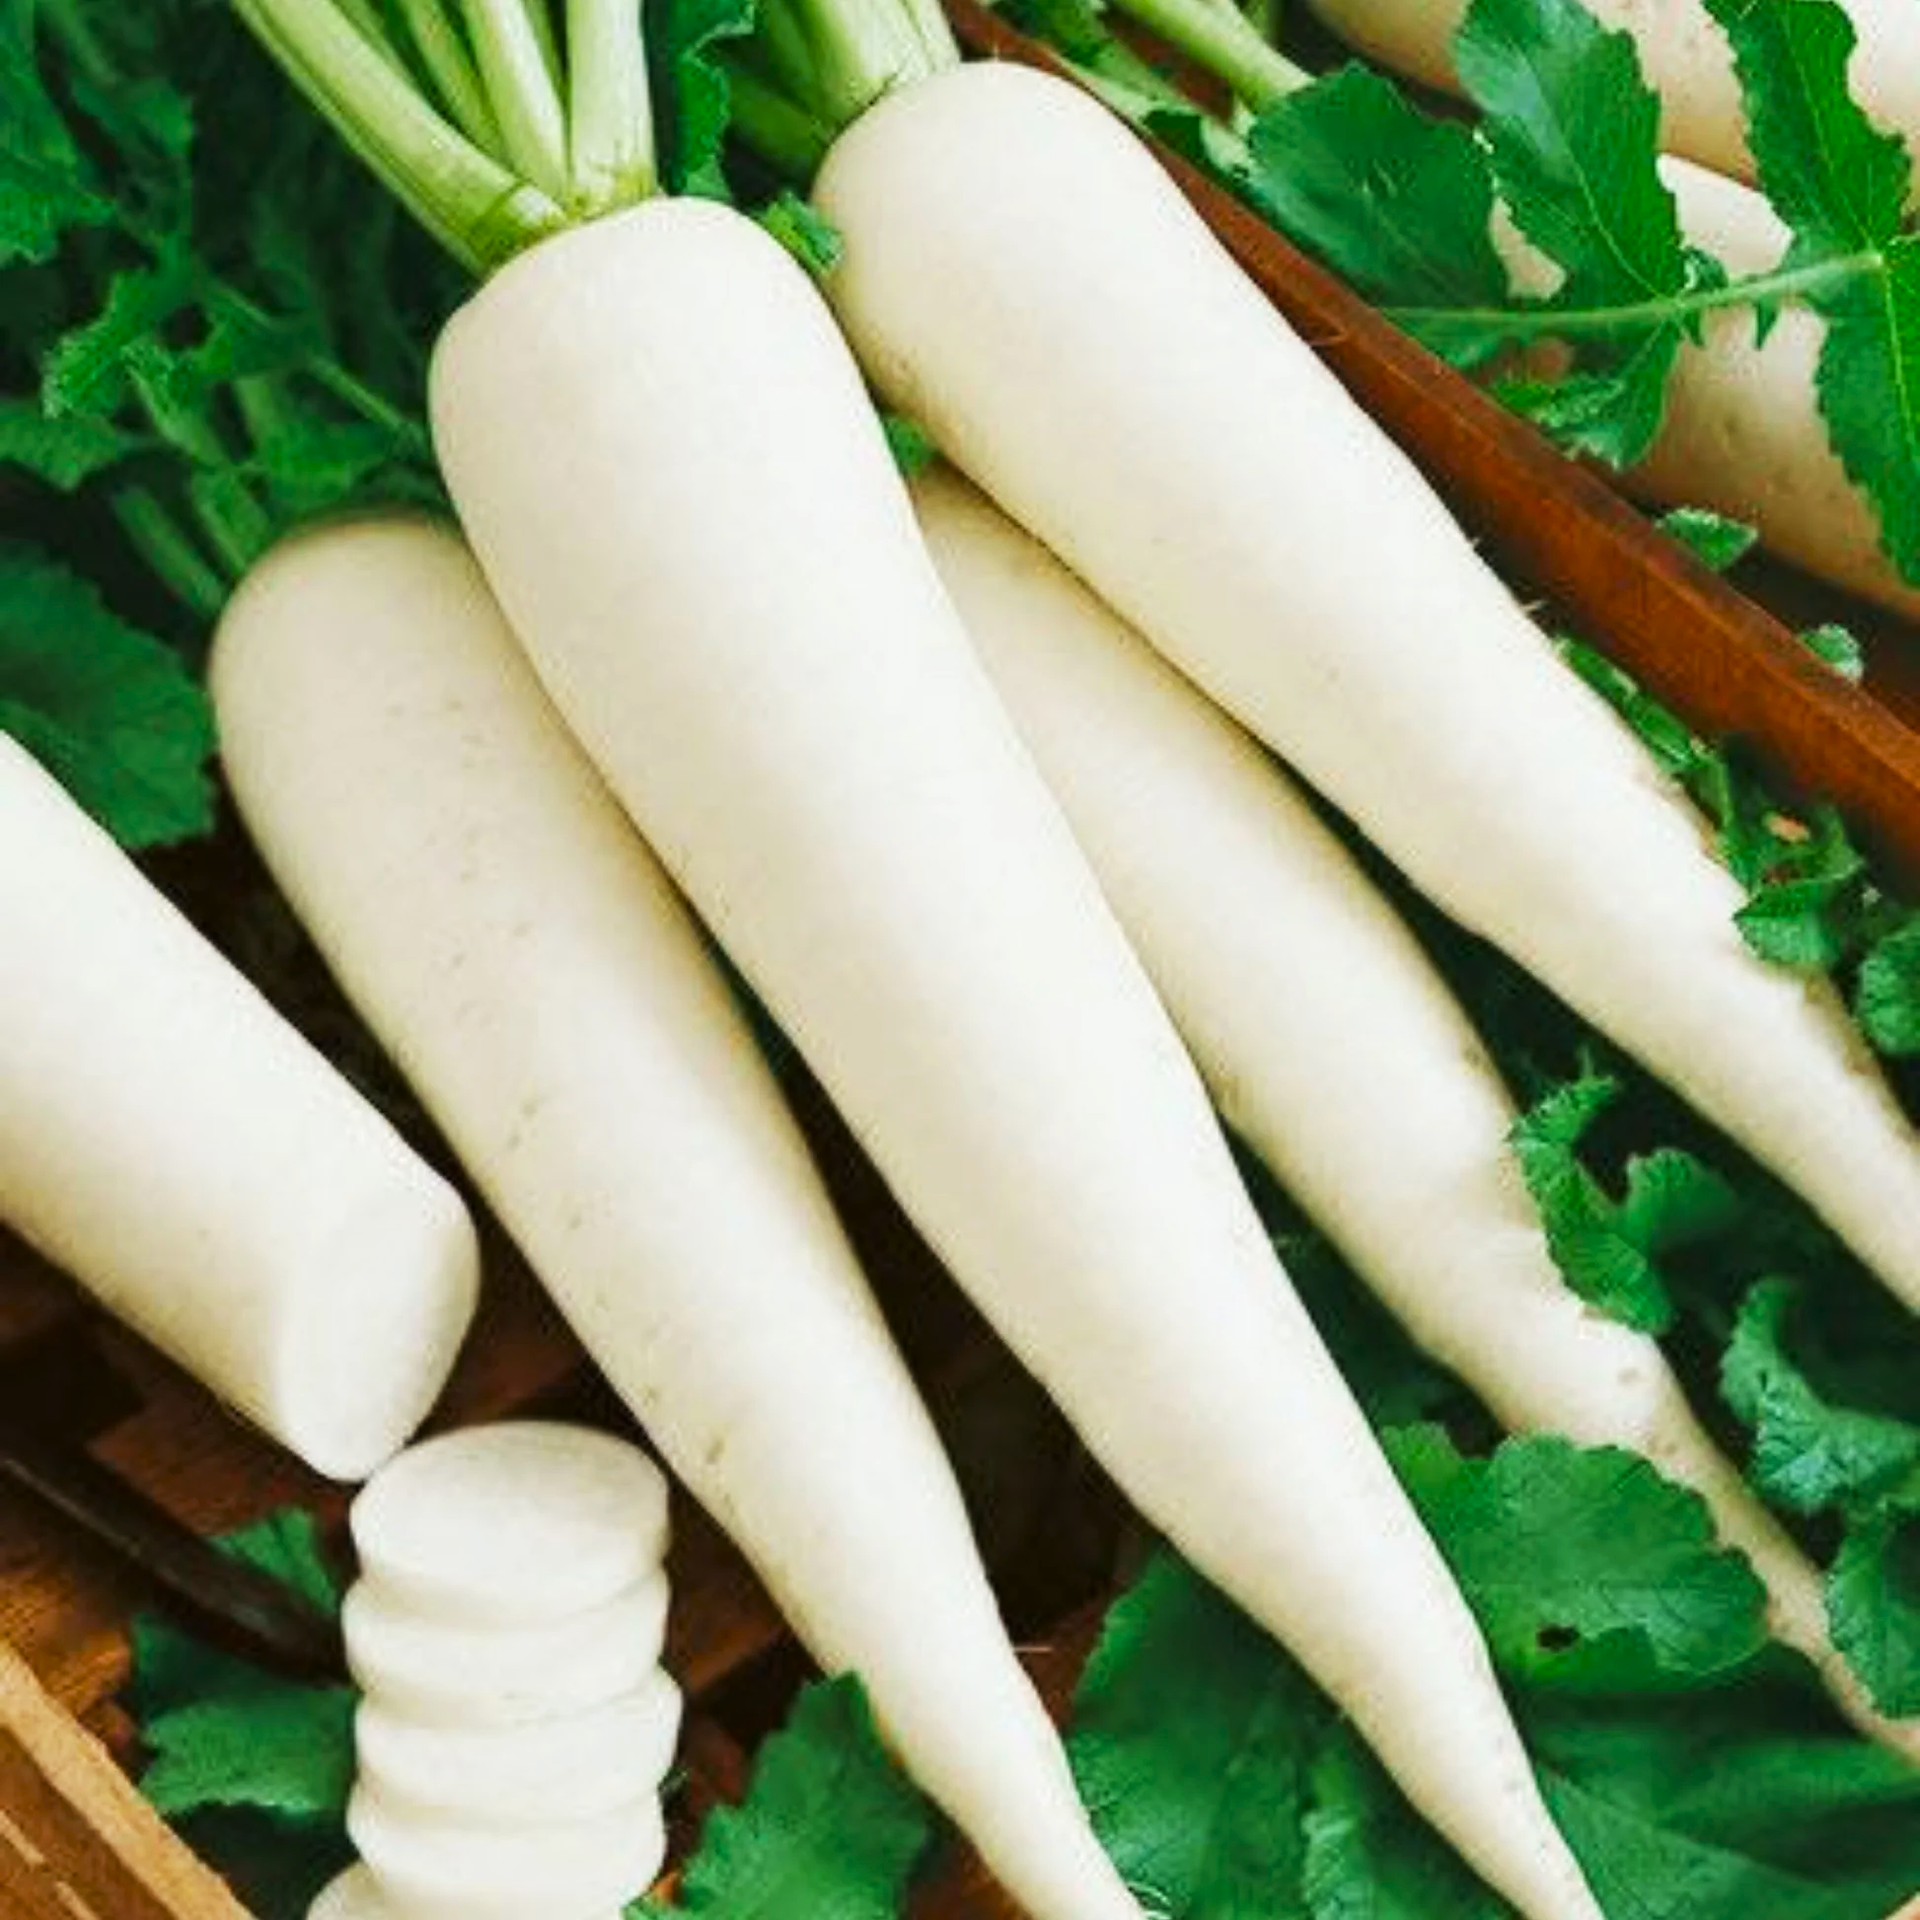 Củ cải không chỉ giòn, có vị cay nồng mà còn chứa nhiều lợi ích sức khỏe đã được khoa học chứng minh. (Ảnh: seed2plant)